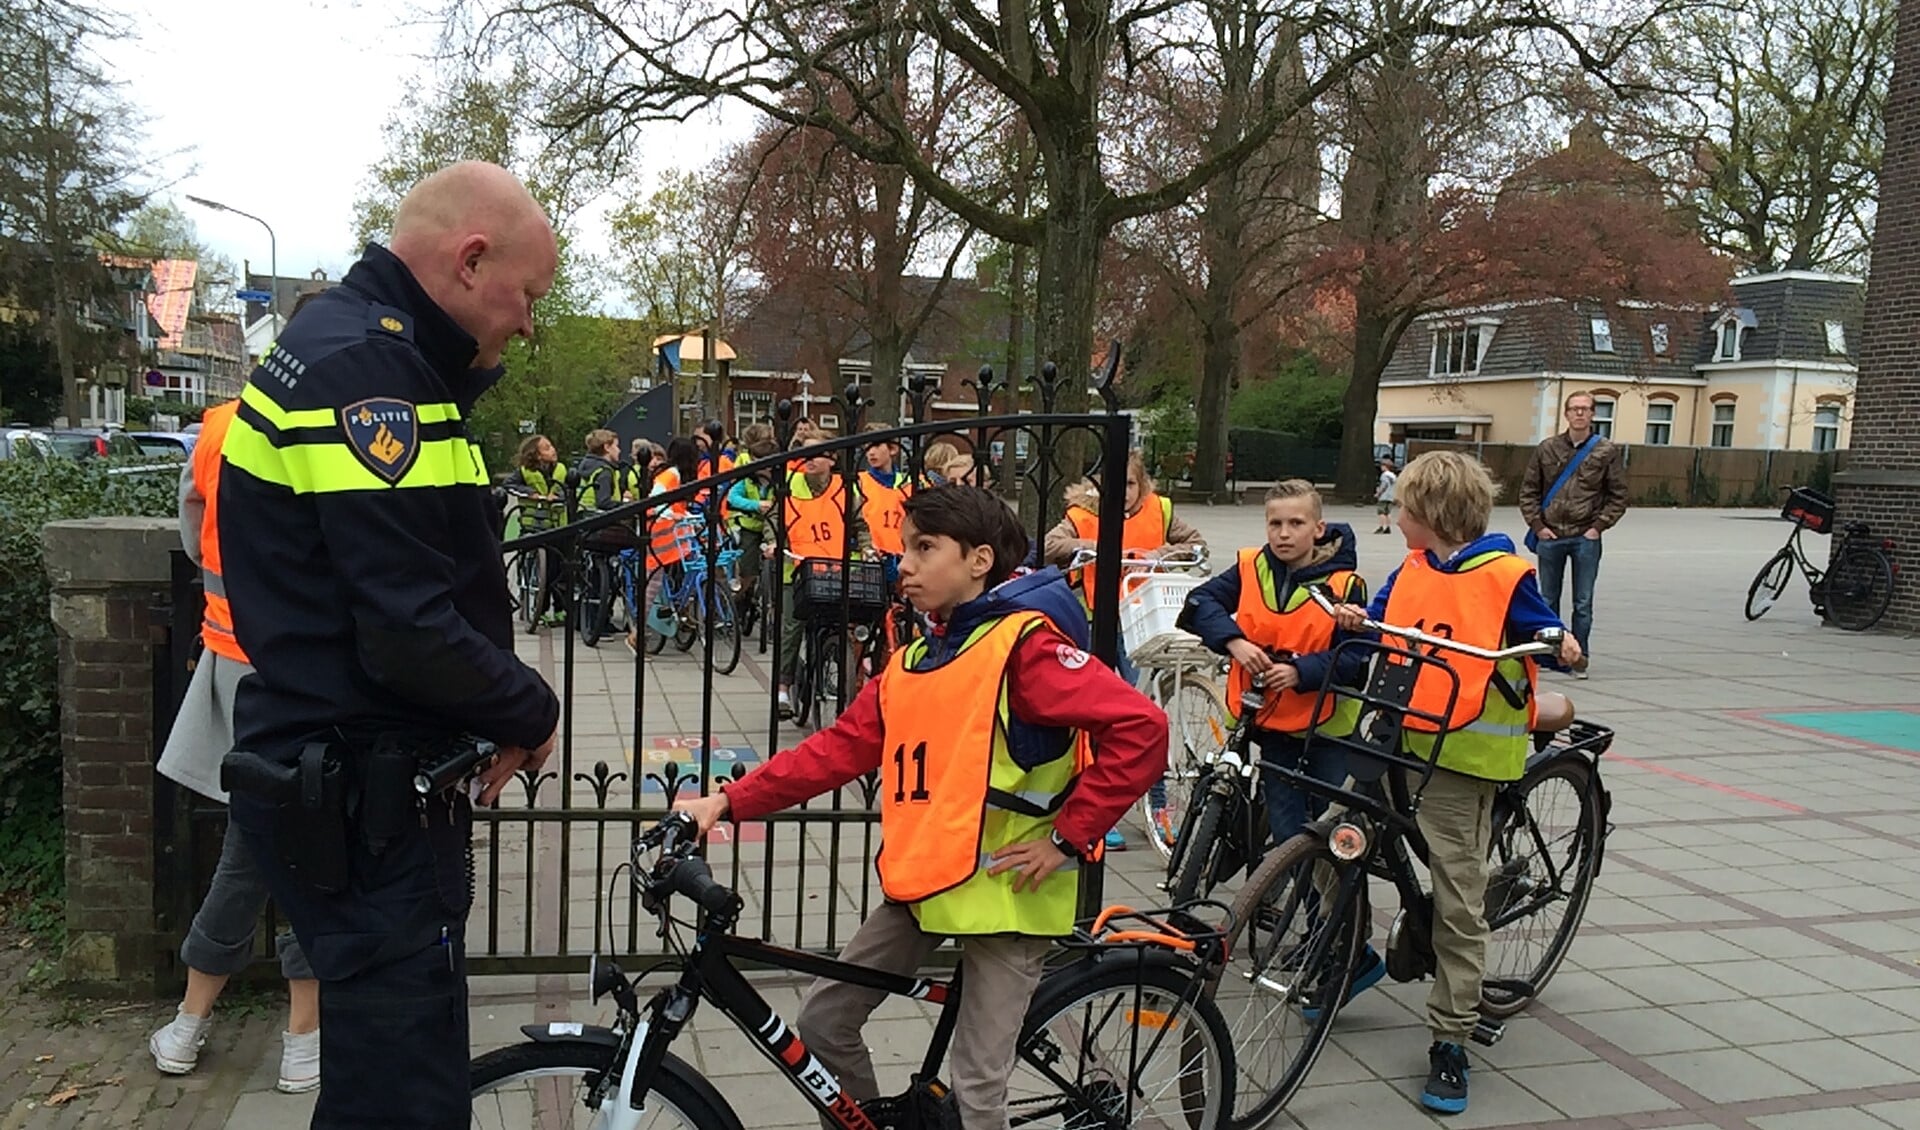 Een agent controleert of de fietsen wel veilig zijn en de leerlingen de weg op mogen.